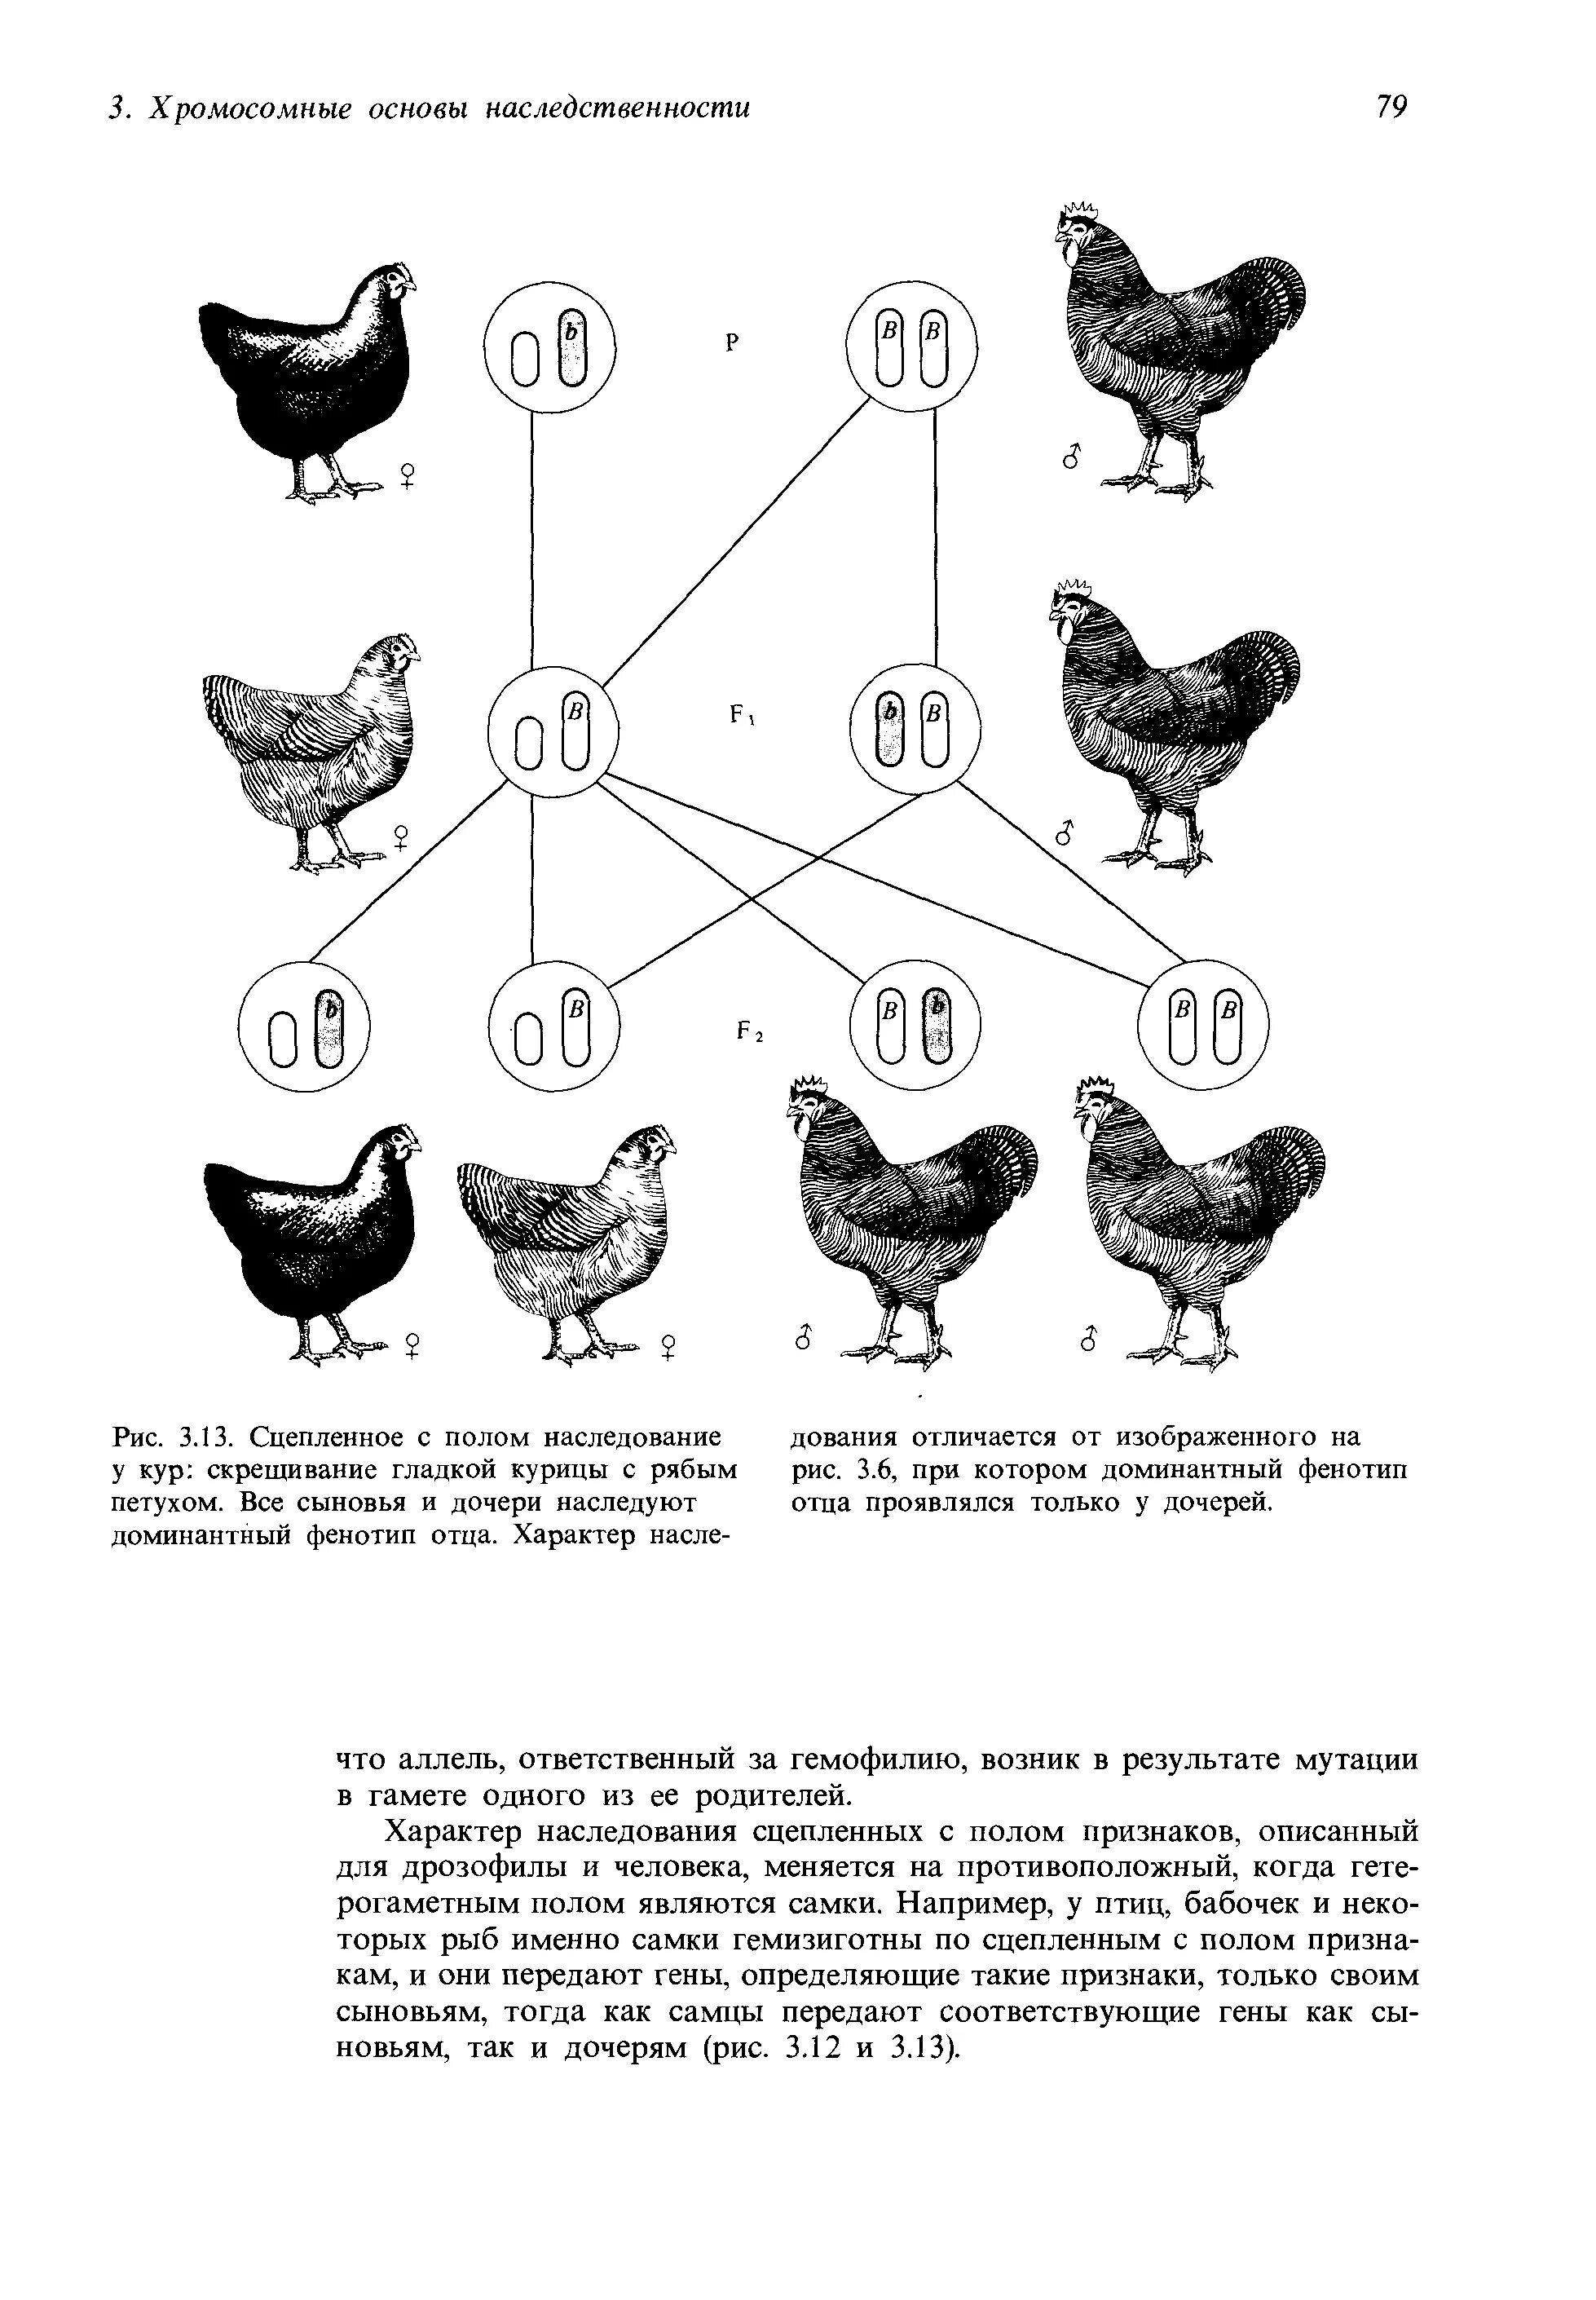 Таблица доминантных признаков у кур. Наследование окраски оперения у кур. Схема скрещивания кур. Наследование признаков у кур.